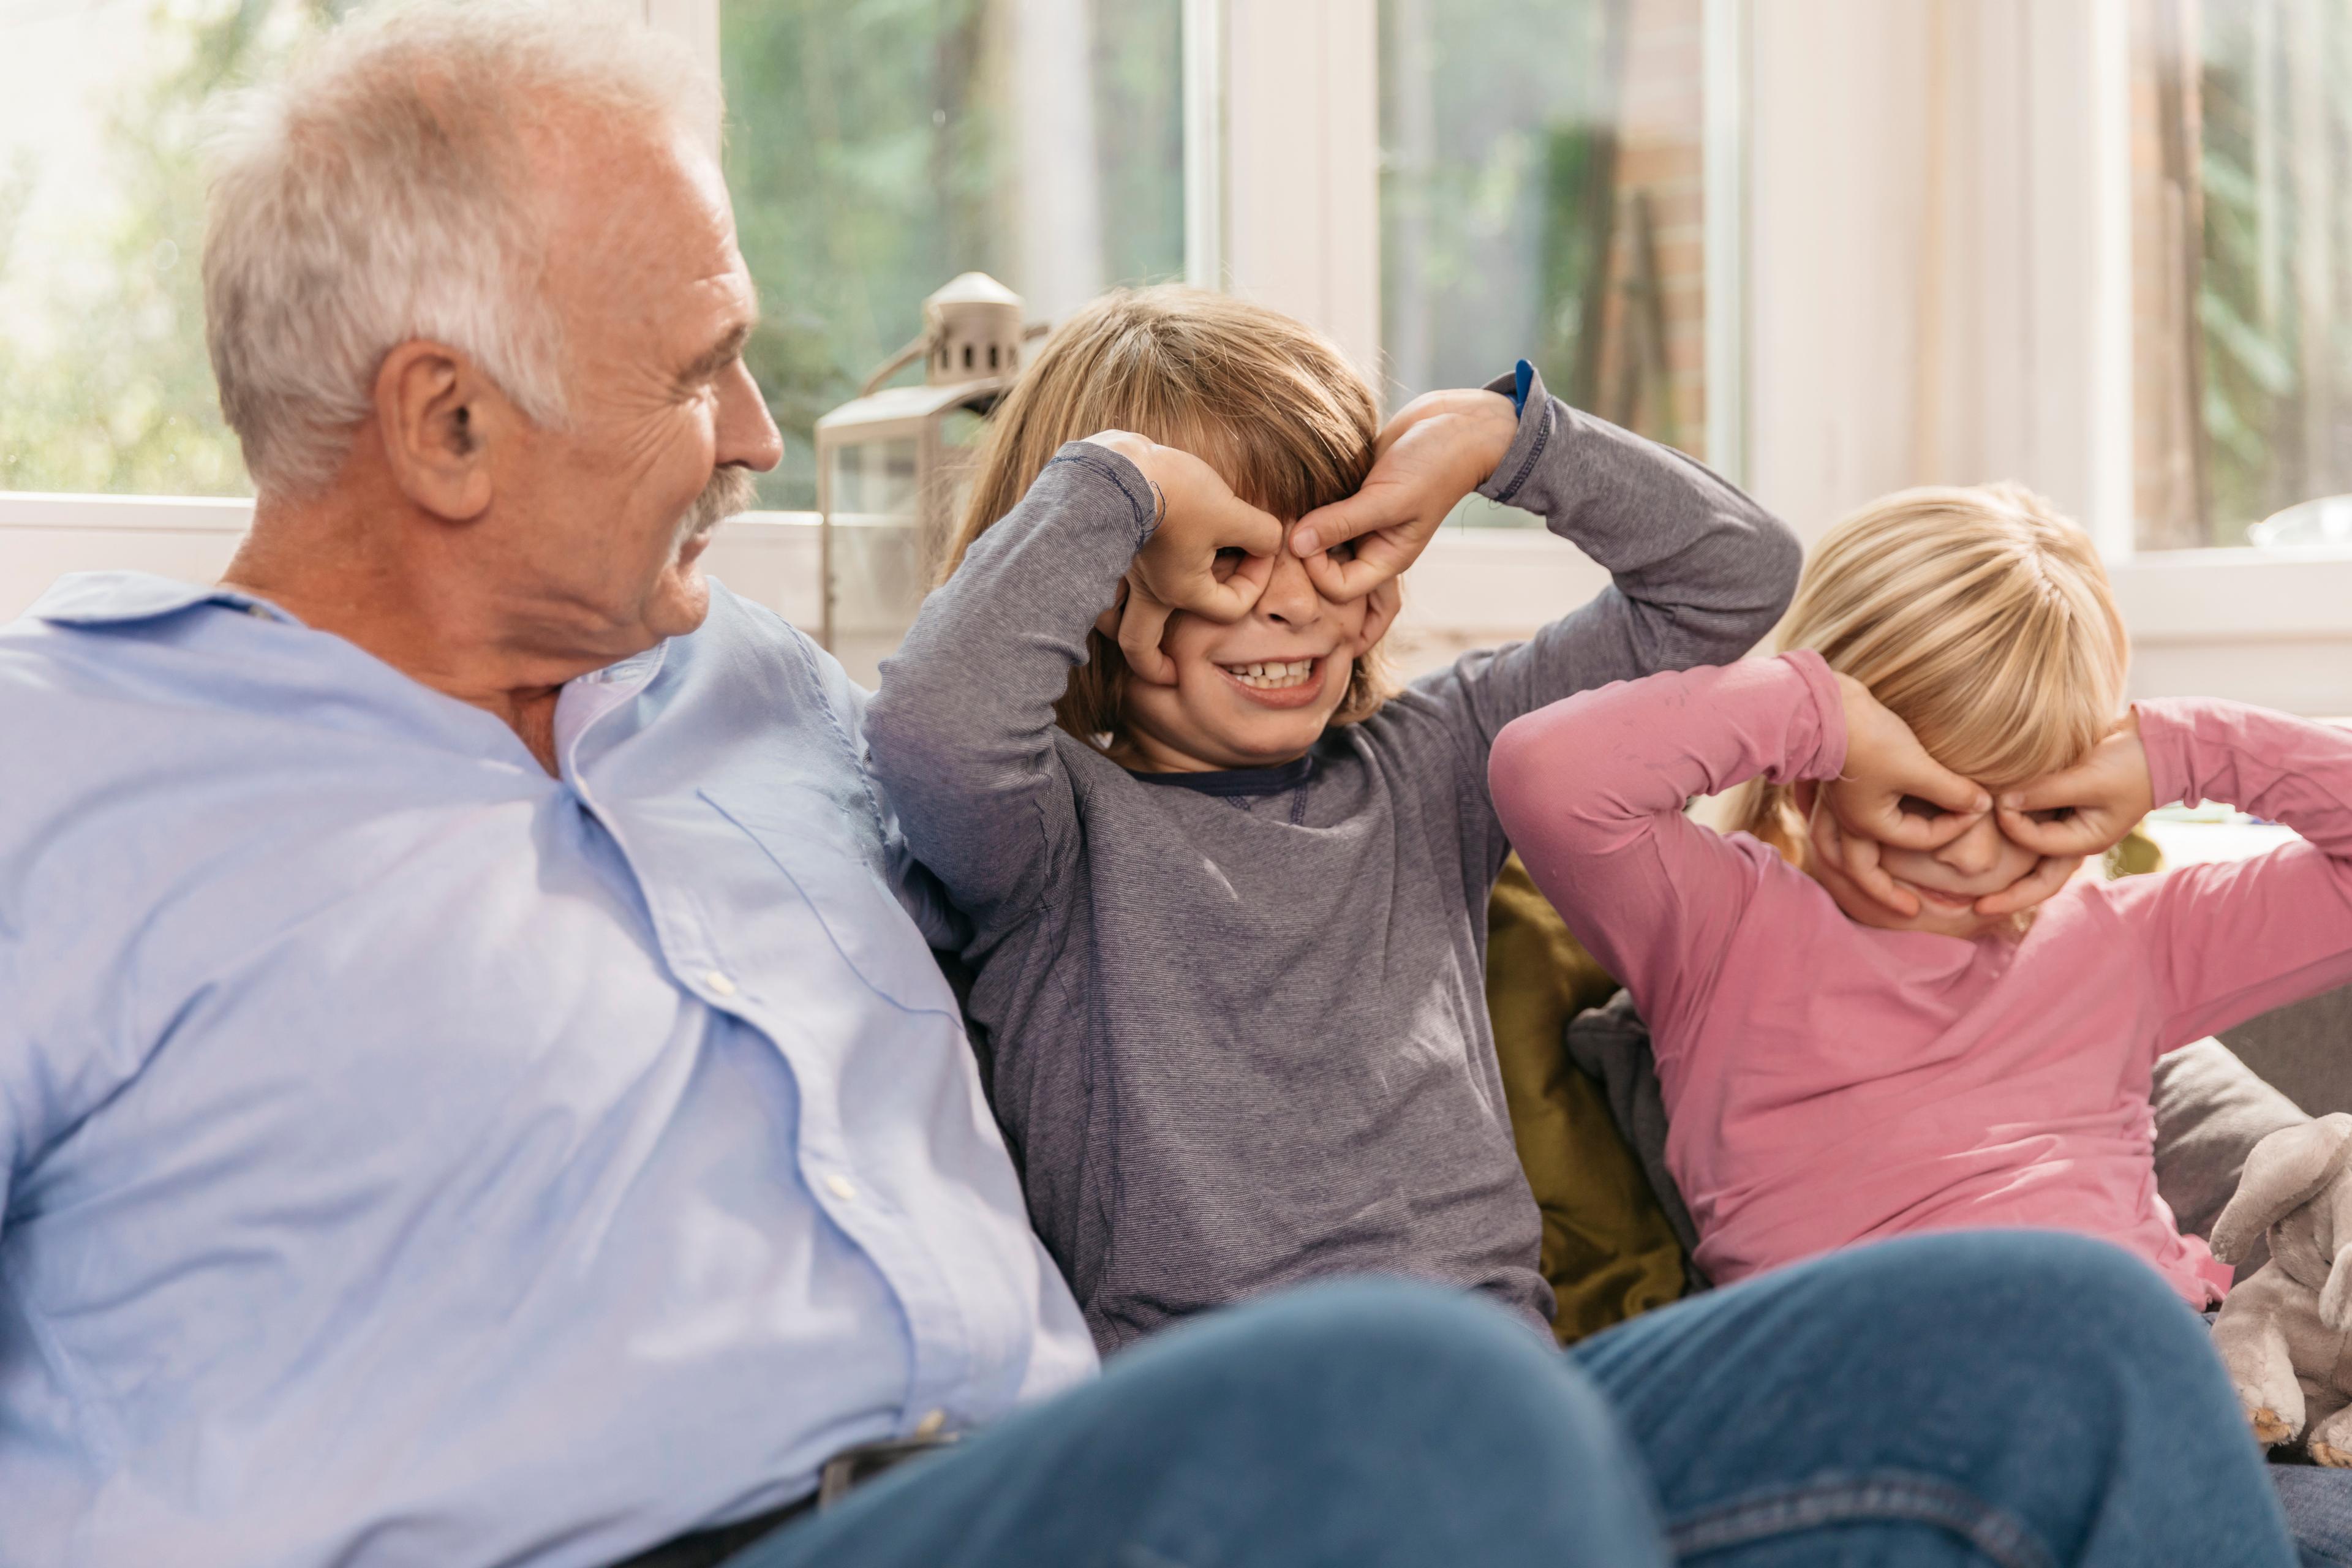 Deux enfants s’amusent à mimer des lunettes avec leurs mains devant les yeux. Les enfants sont assis sur un canapé avec leur grand-père. Tous rient. 